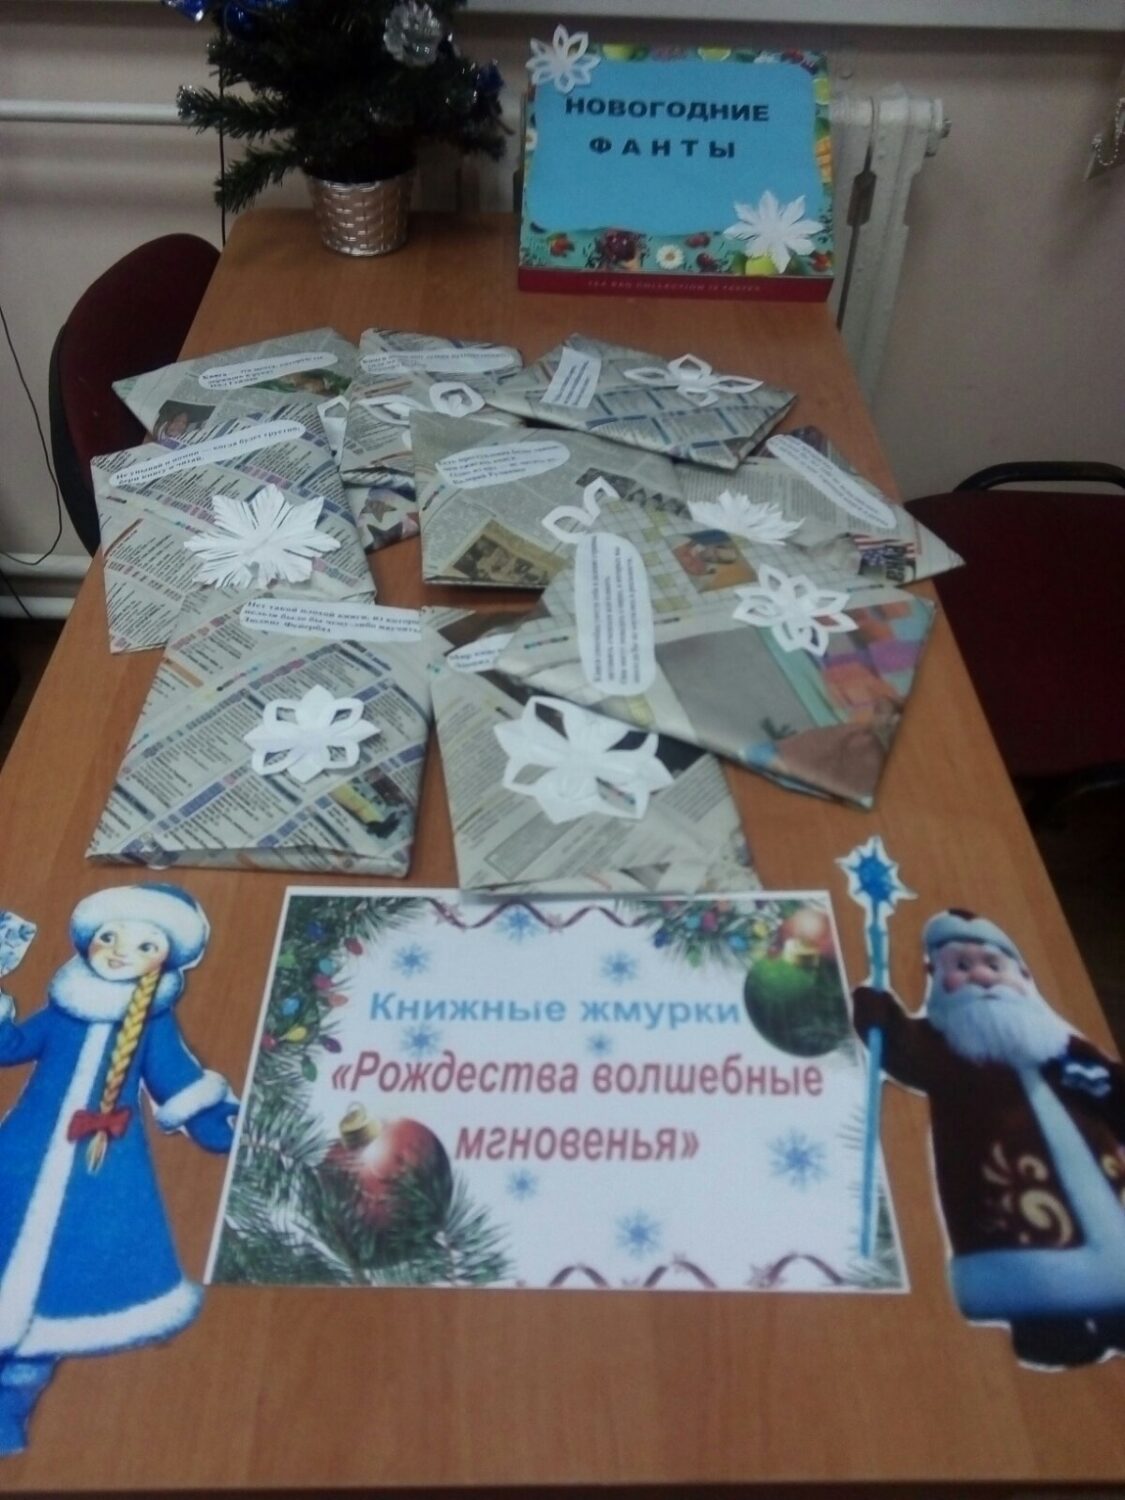 25.12.2022 в Путришковской СБ прошли книжные жмурки “Рождества волшебные мгновенья”